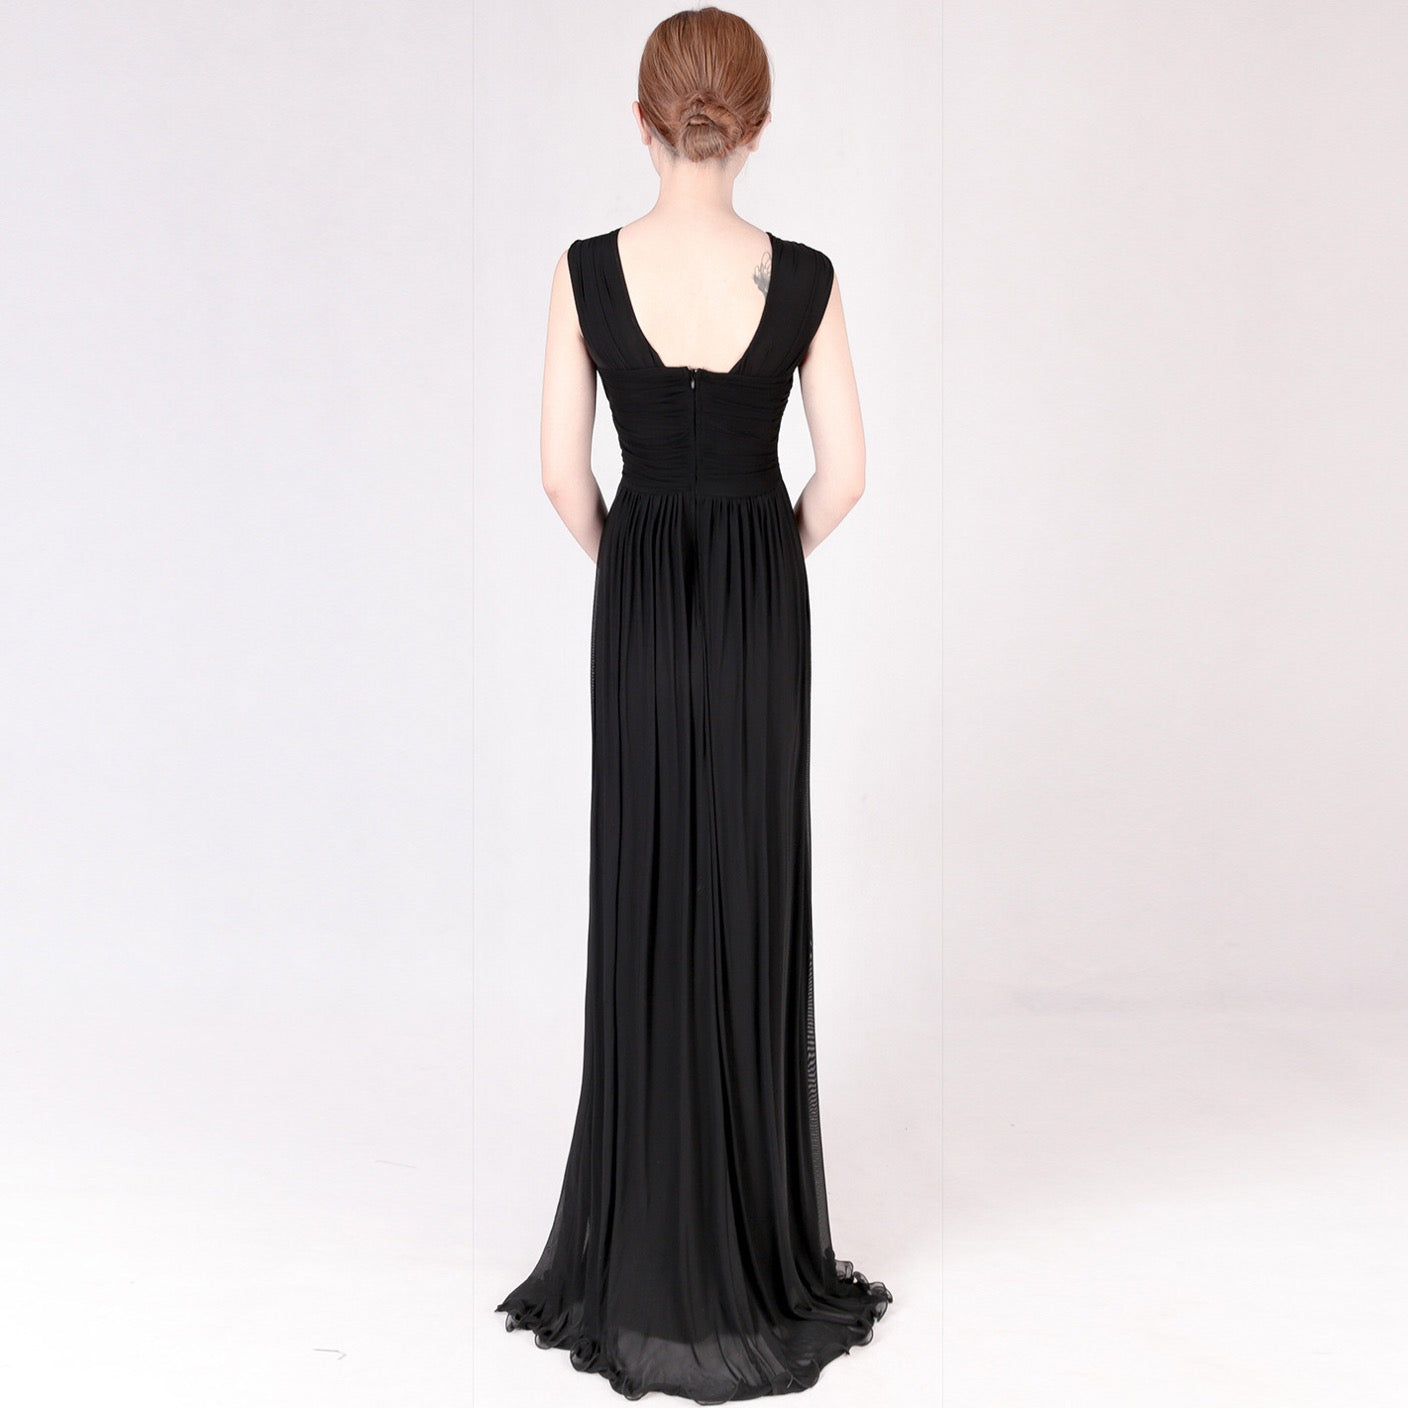 ashlyn マーメイドドレス ブルー ブラック M L XL 結婚式 大きいサイズ 